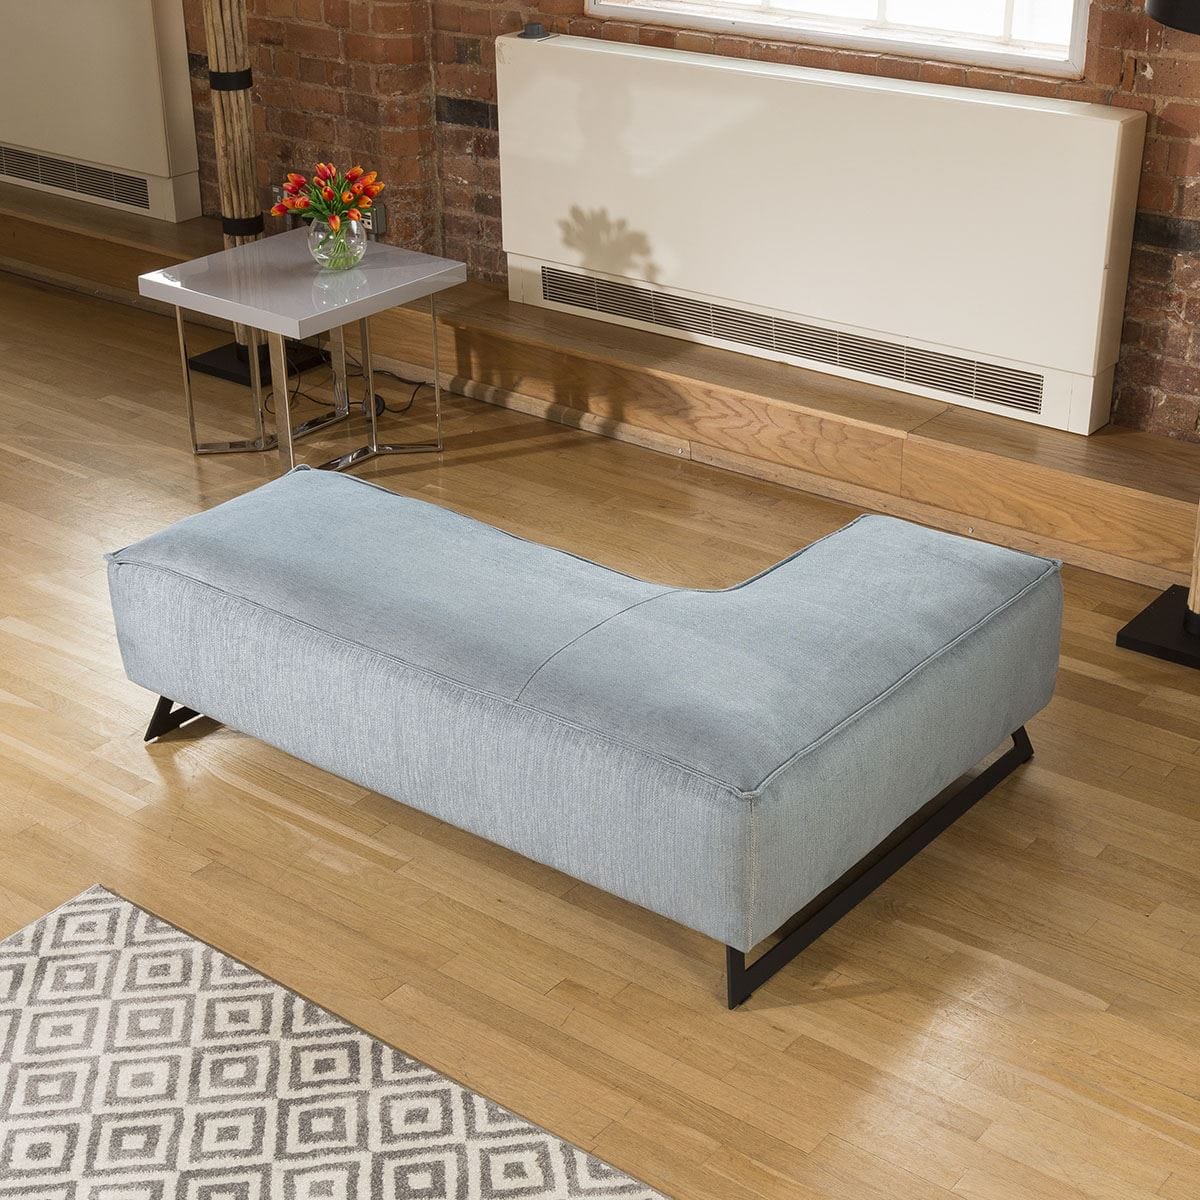 Quatropi Special Unique L Shaped Footstool / Sofa Extension Effie Range Right